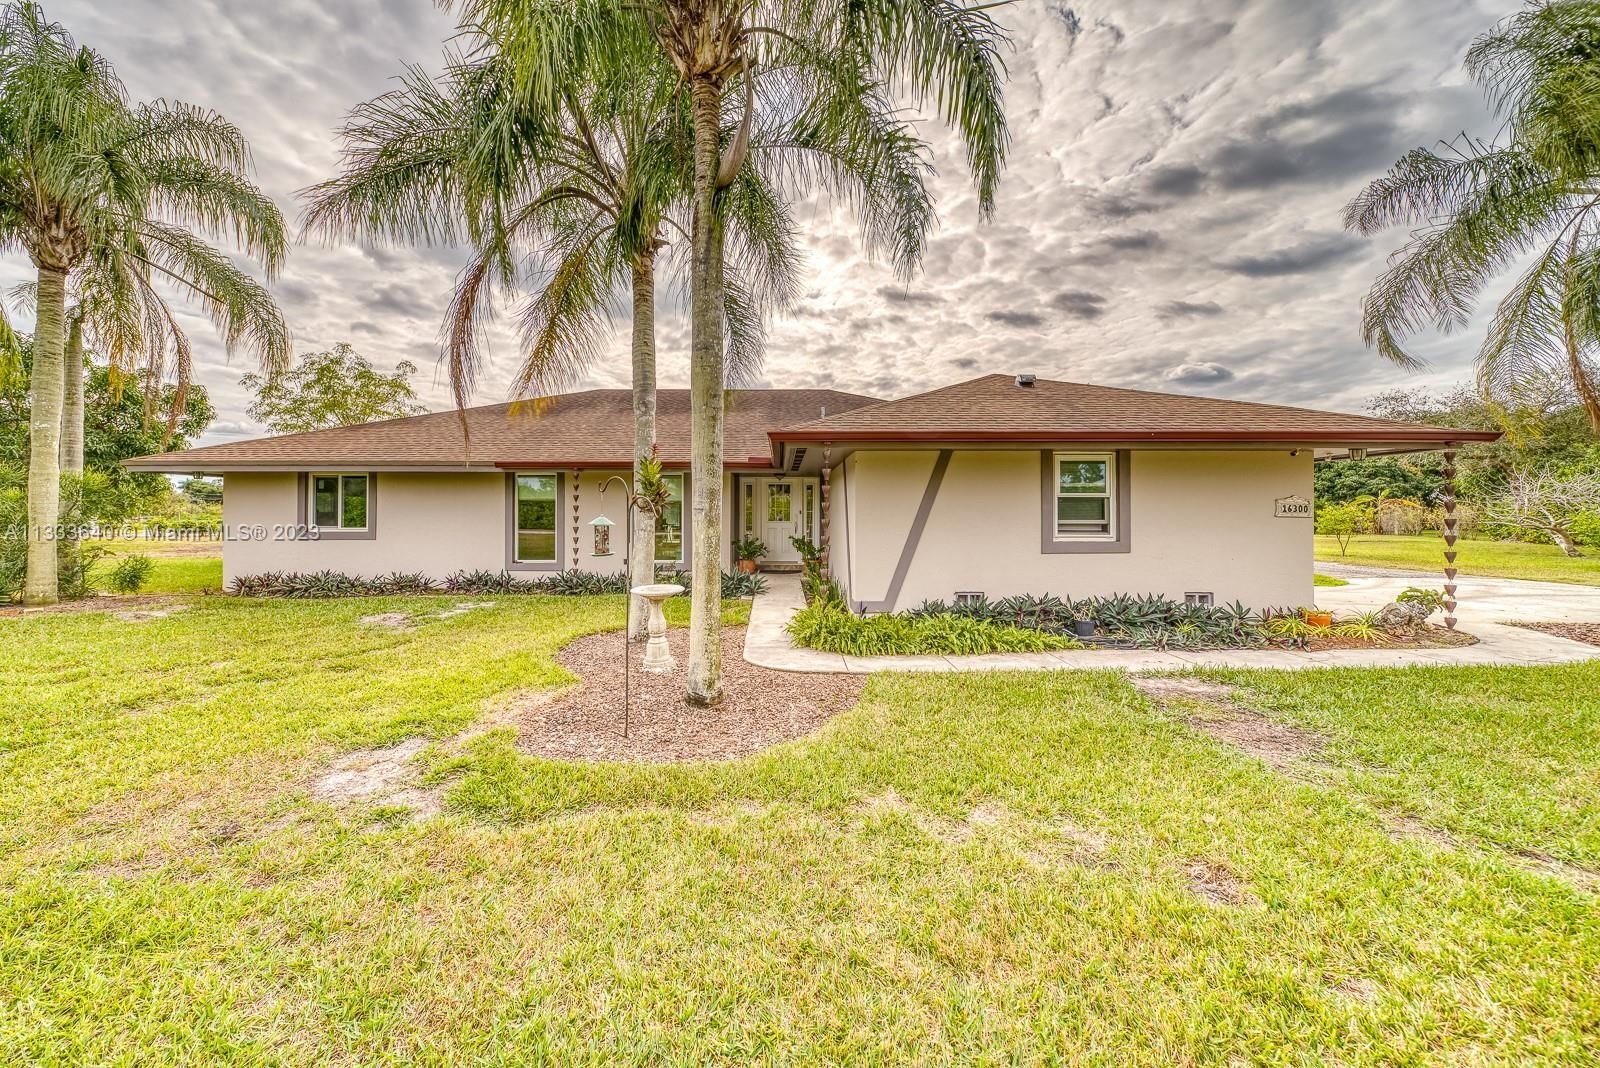 Real estate property located at 16300 Aladdin Blvd, Miami-Dade County, Miami, FL